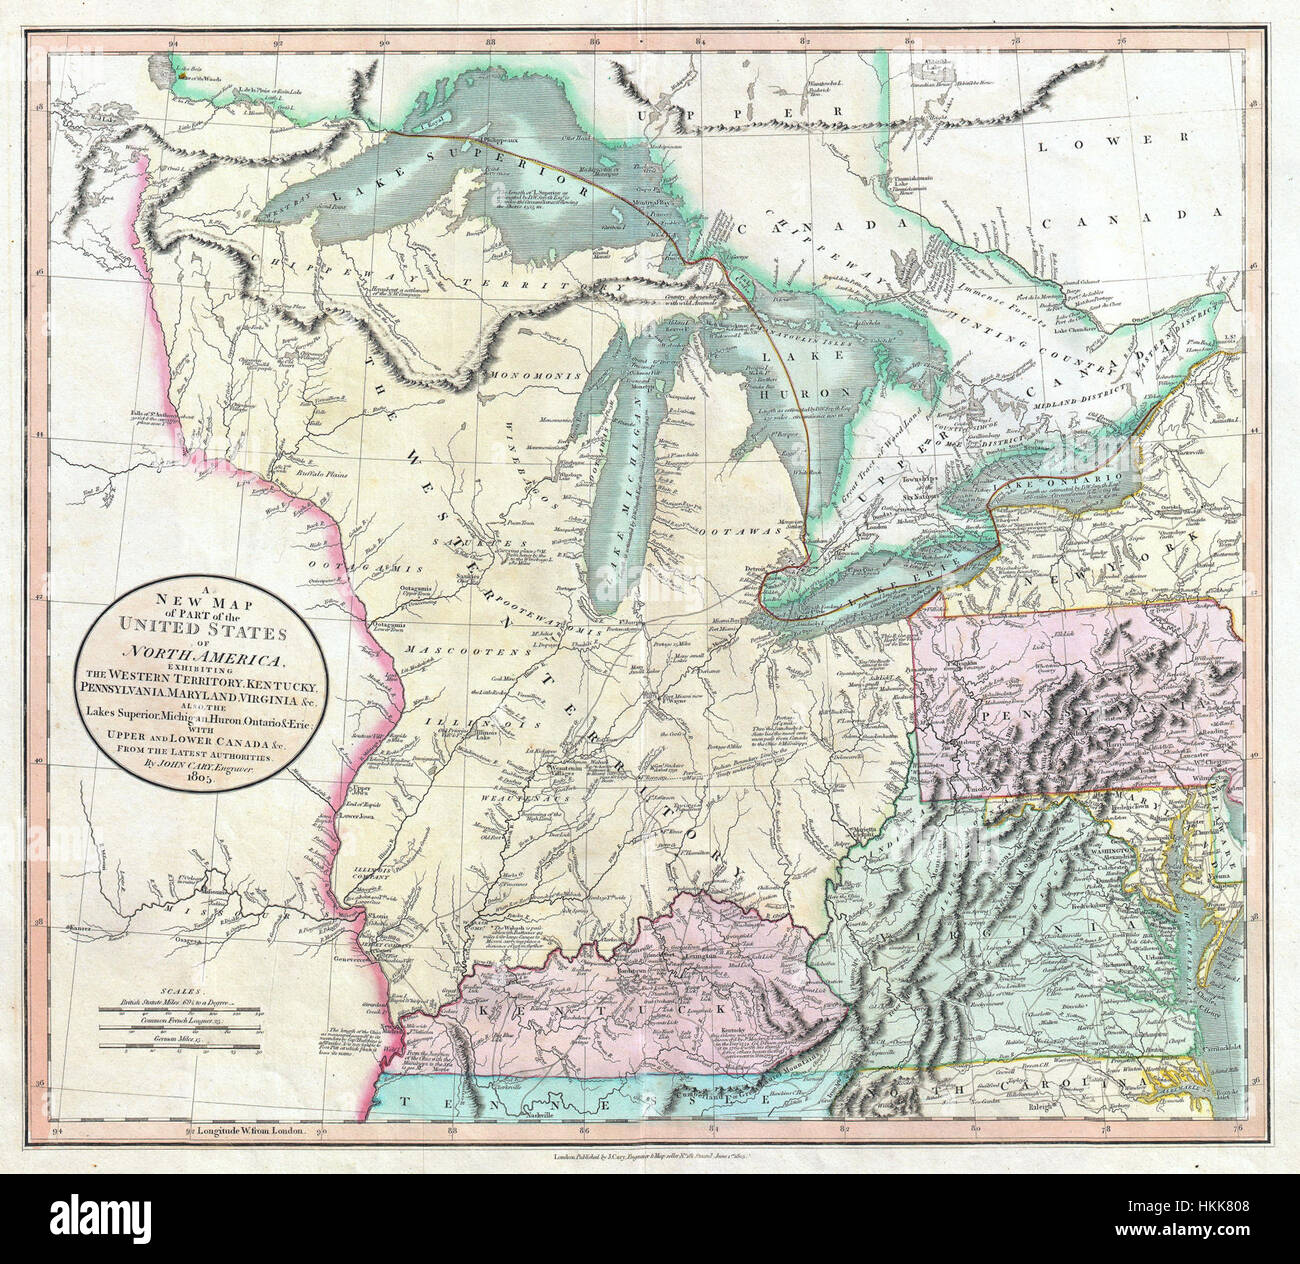 1805 Cary Mapa de los Grandes Lagos y el territorio occidental (Kentucy, Virginia, Ohio, etc..) - Geographicus --WesternTerritory cary-1805 Foto de stock